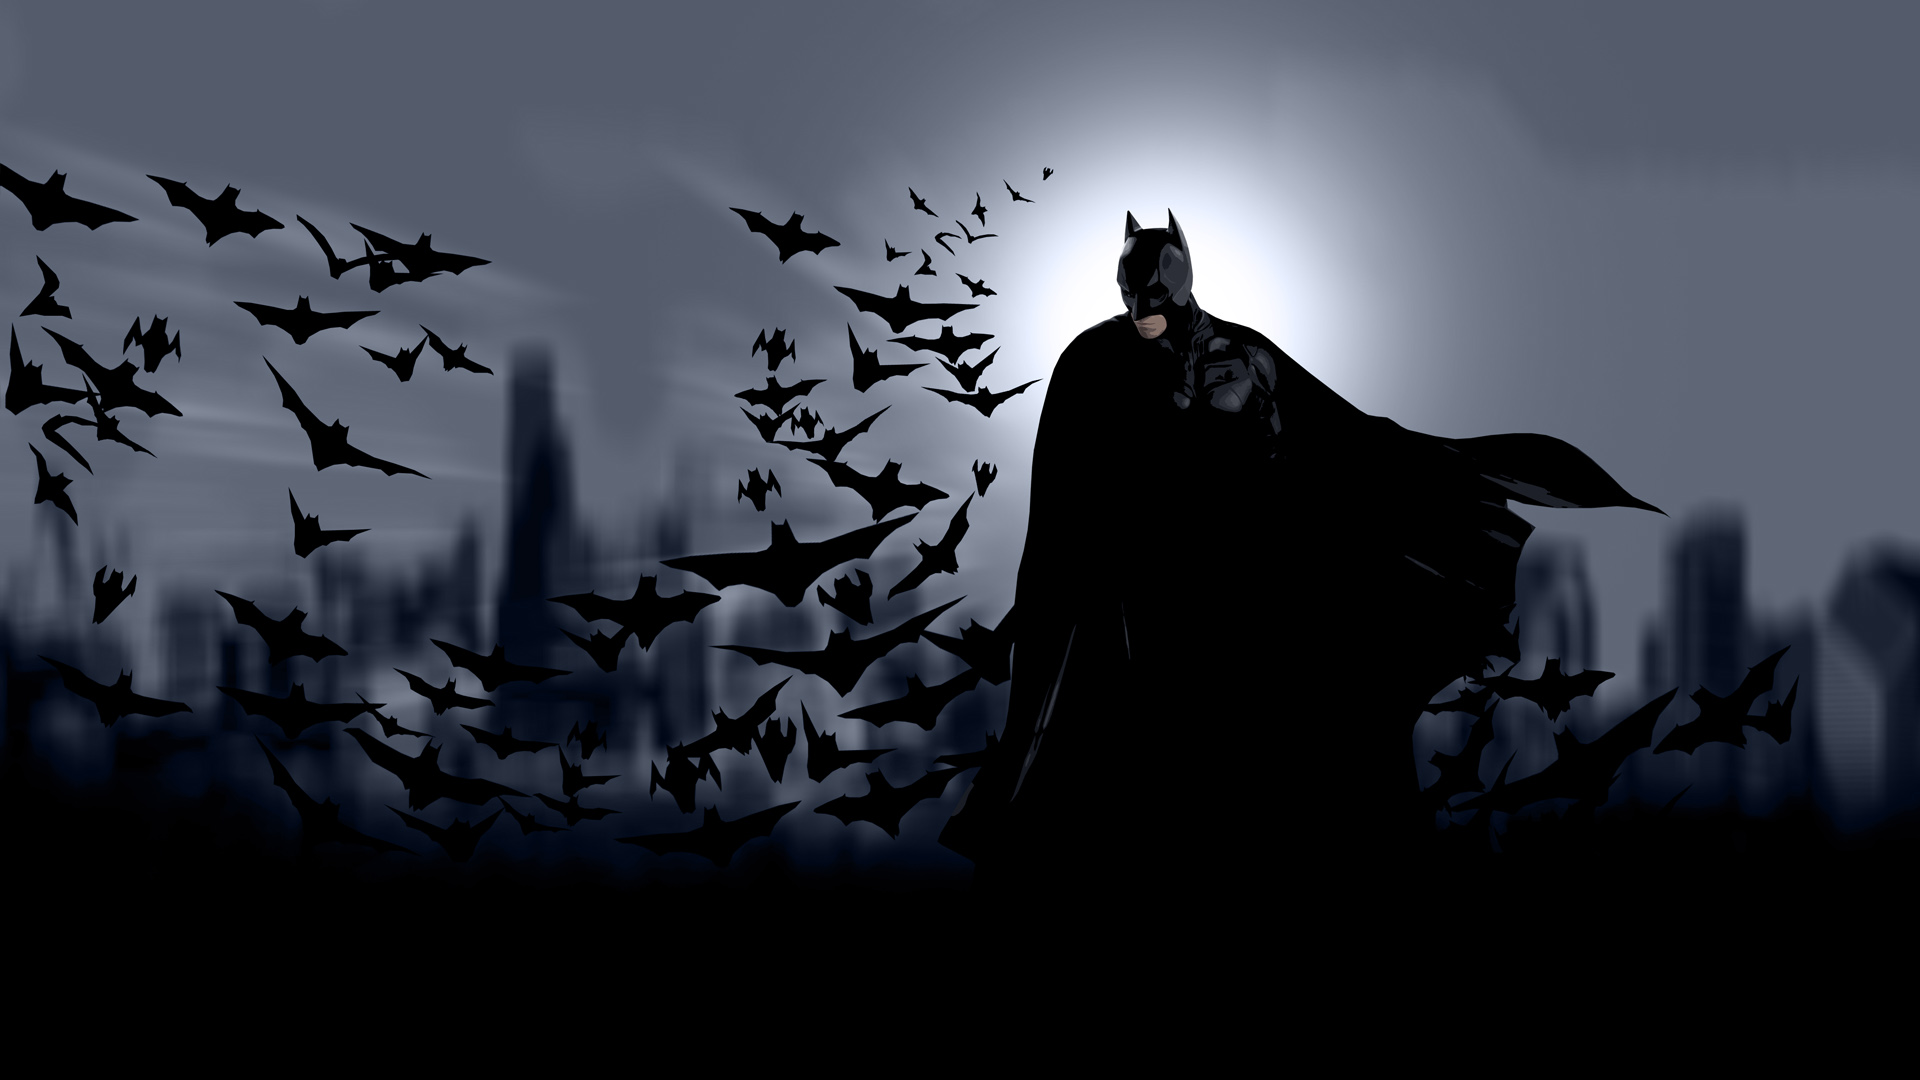 1040 Batman HD Wallpapers | Backgrounds - Wallpaper Abyss